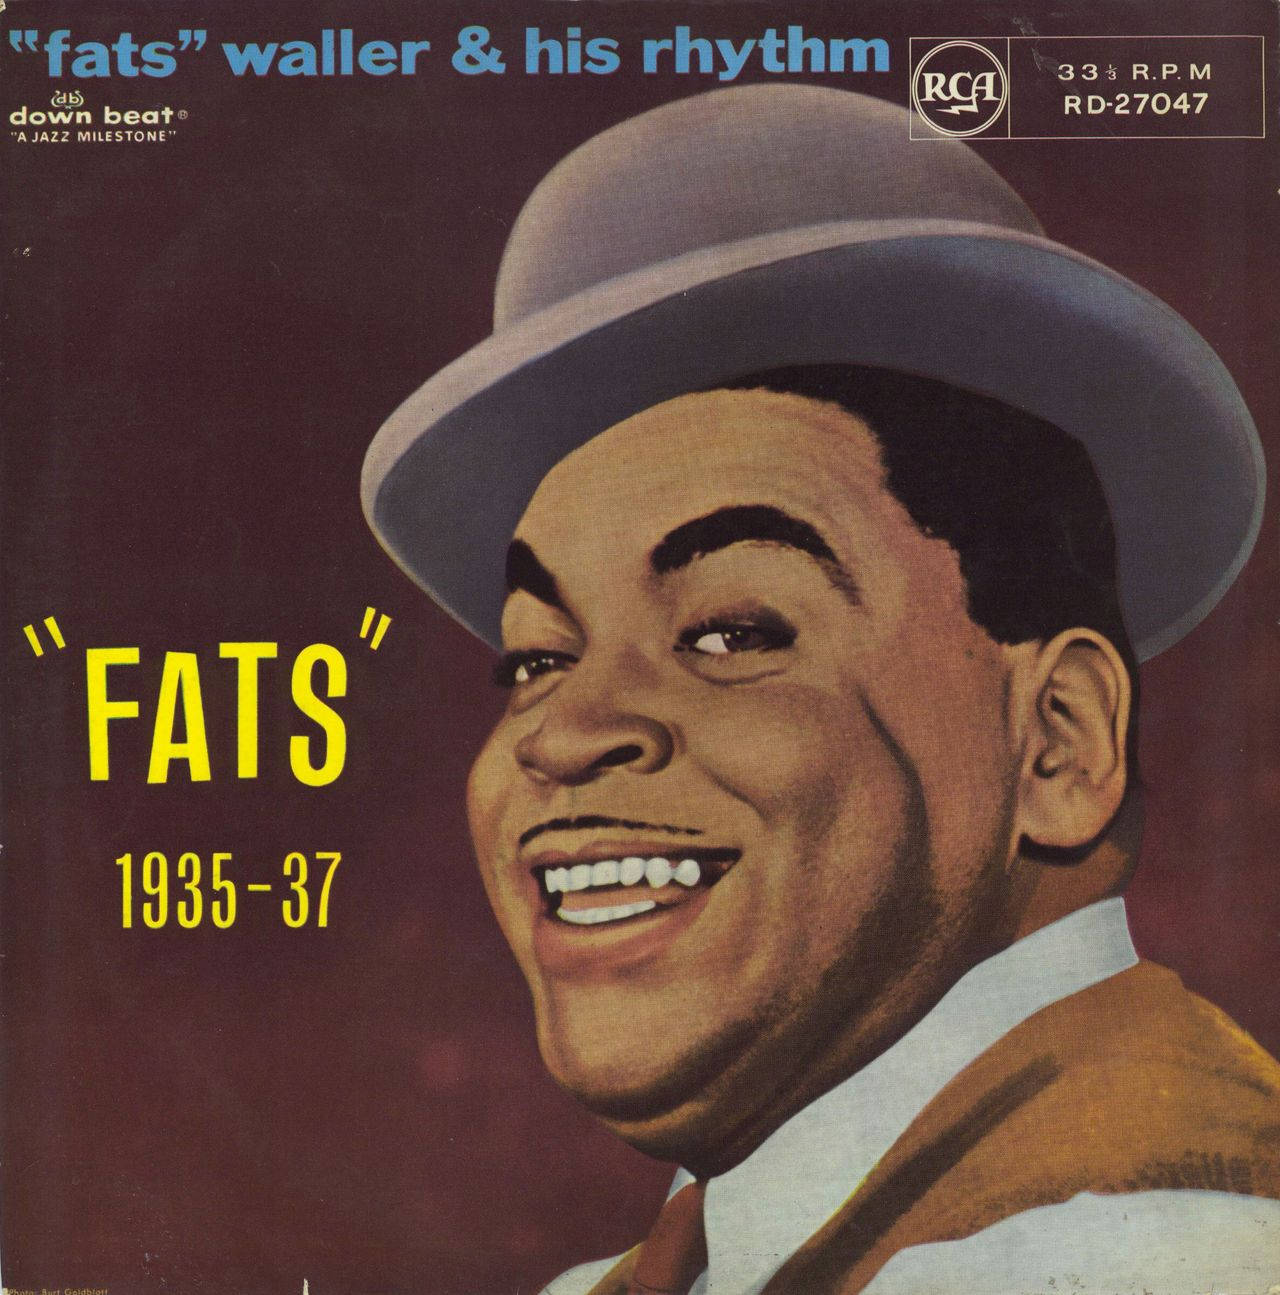 Fats Waller og hans rytme 1935 til 1937 Wallpaper